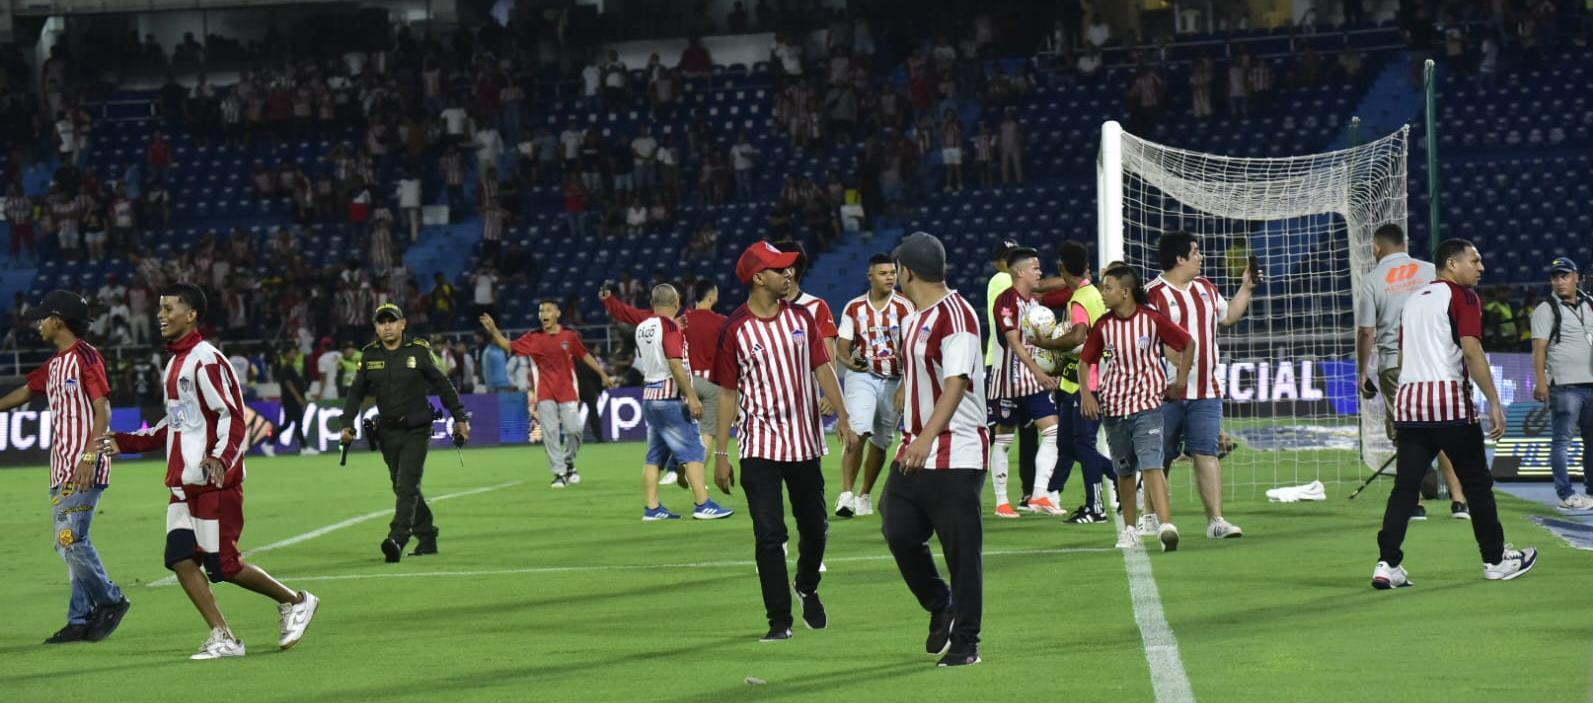 La invasión de la cancha por aficionados del Junior produjo que el partido contra Bucaramanga estuviera suspendido durante 35 minutos.